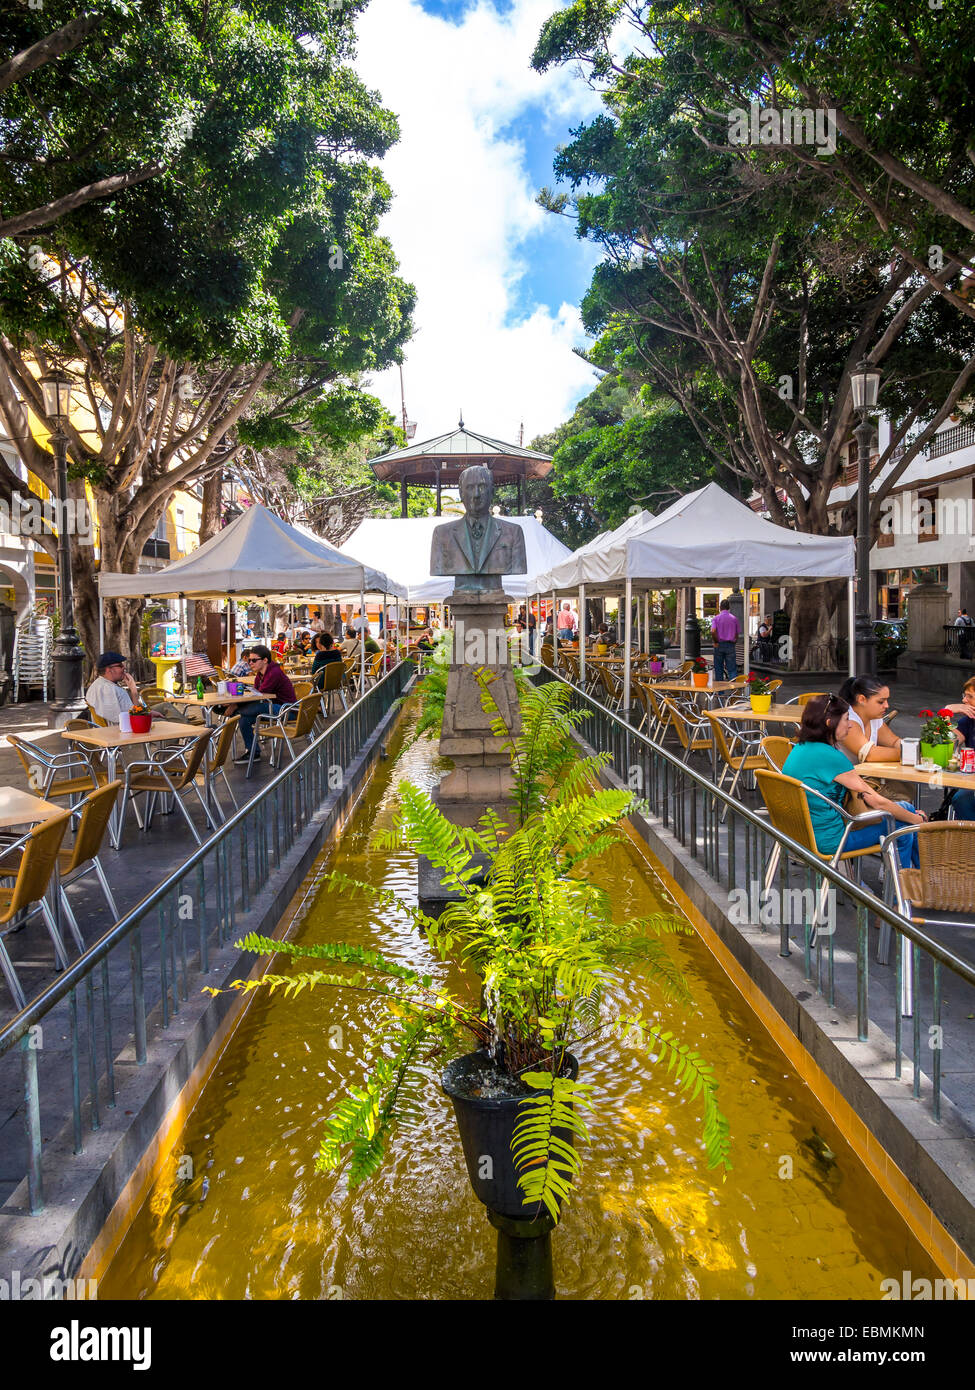 Restaurants and cafes, Plaza de La Alameda, Santa Cruz de La Palma, La Palma, Canary Islands, Spain Stock Photo